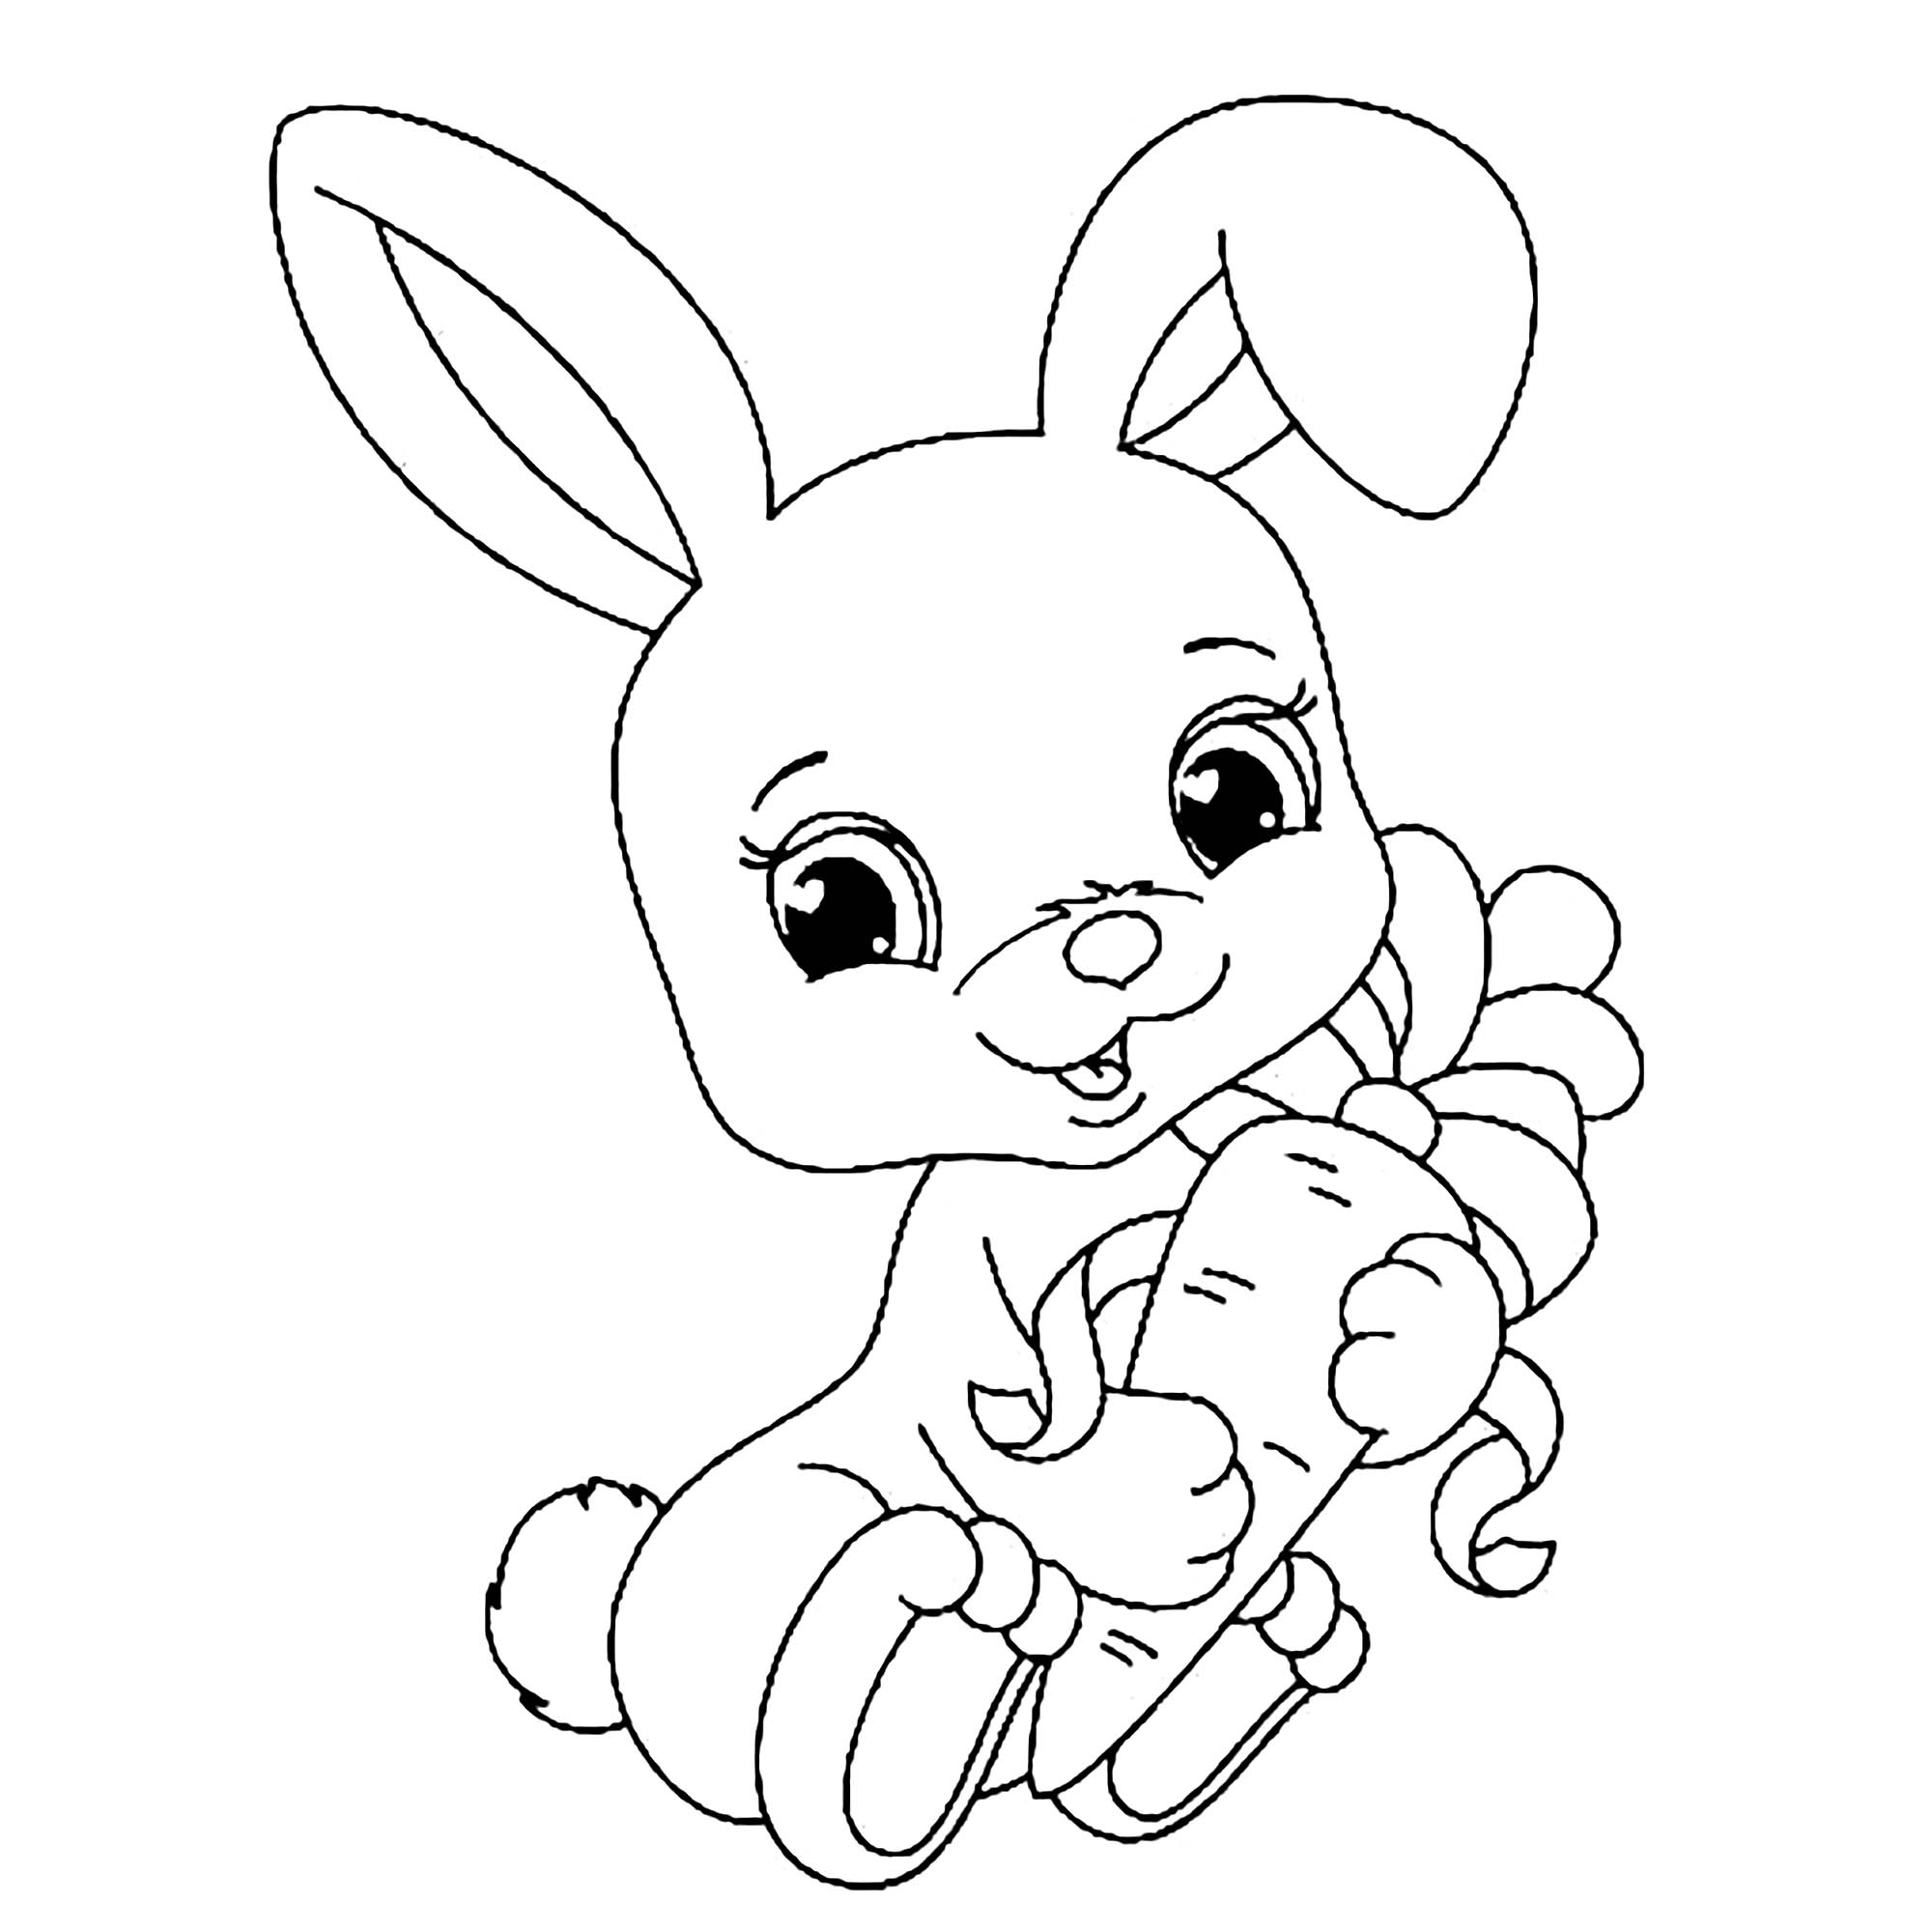 Tranh tô màu chú thỏ dễ thương ôm củ cà rốt